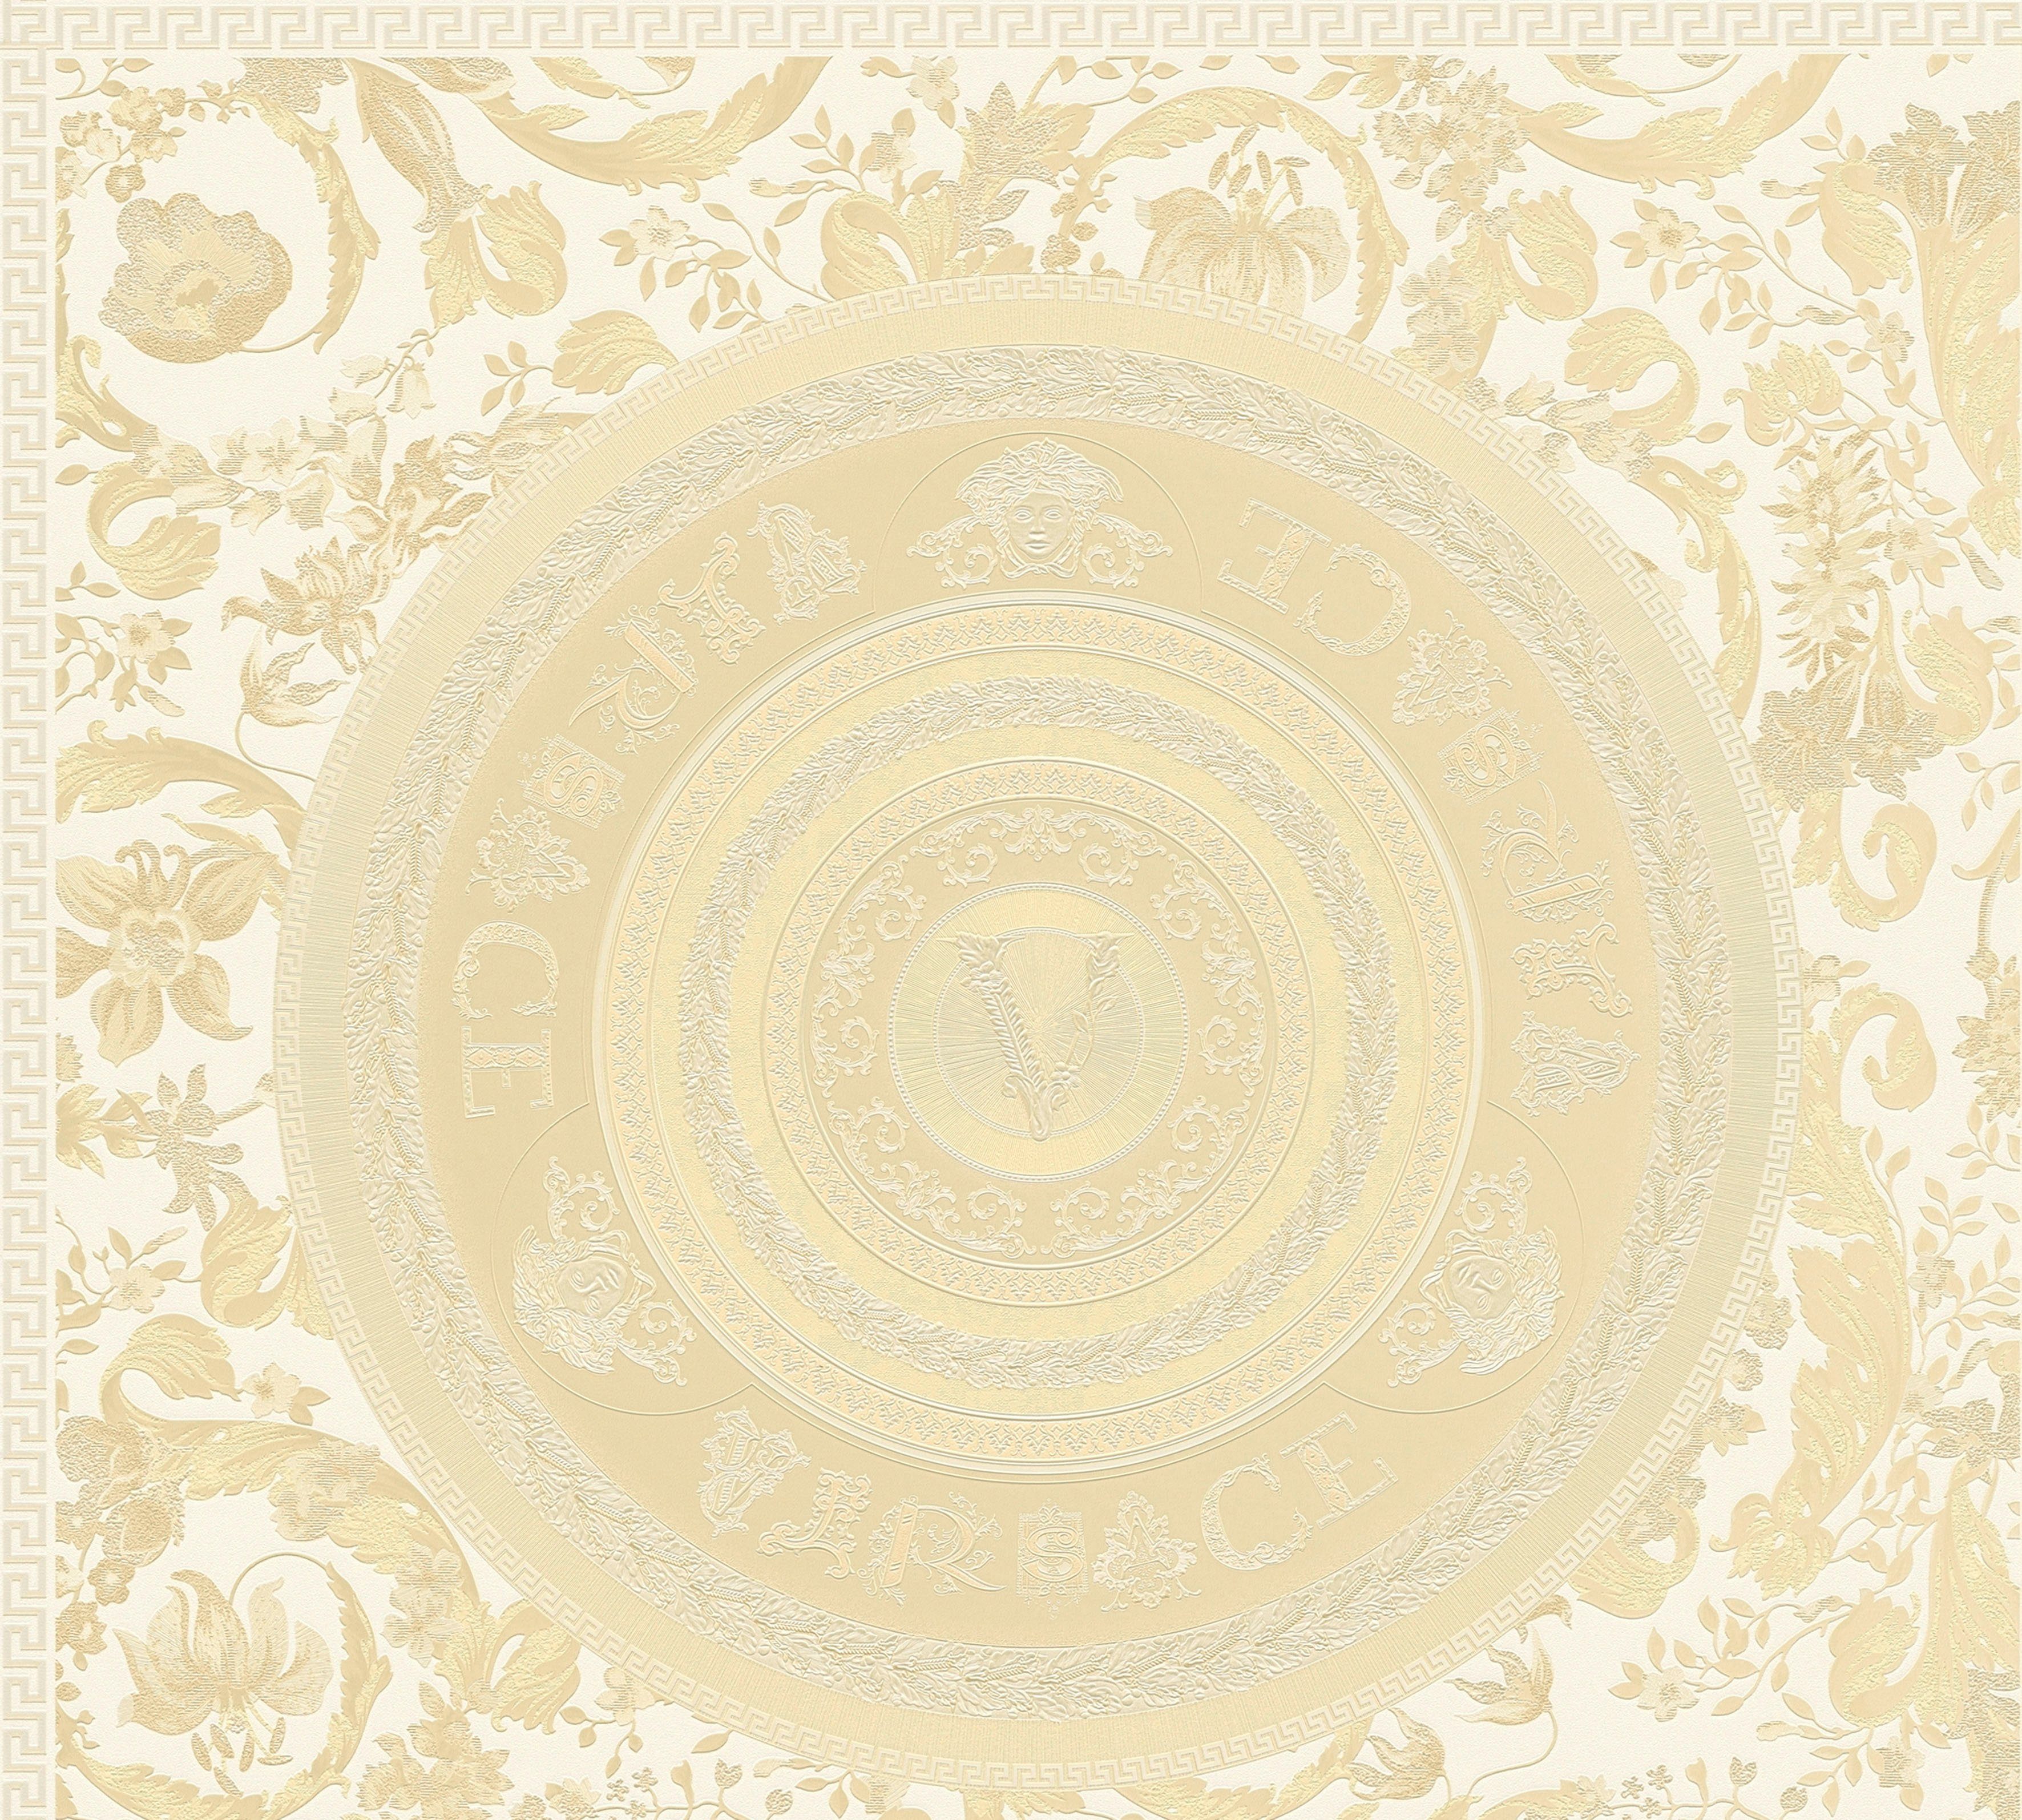 Wallpaper Design, Versace Vliestapete Floral Fliesen-Tapete strukturiert, Versace glänzend, beige/creme/weiß St), Designertapete, 5 leicht (1 auffallende leicht